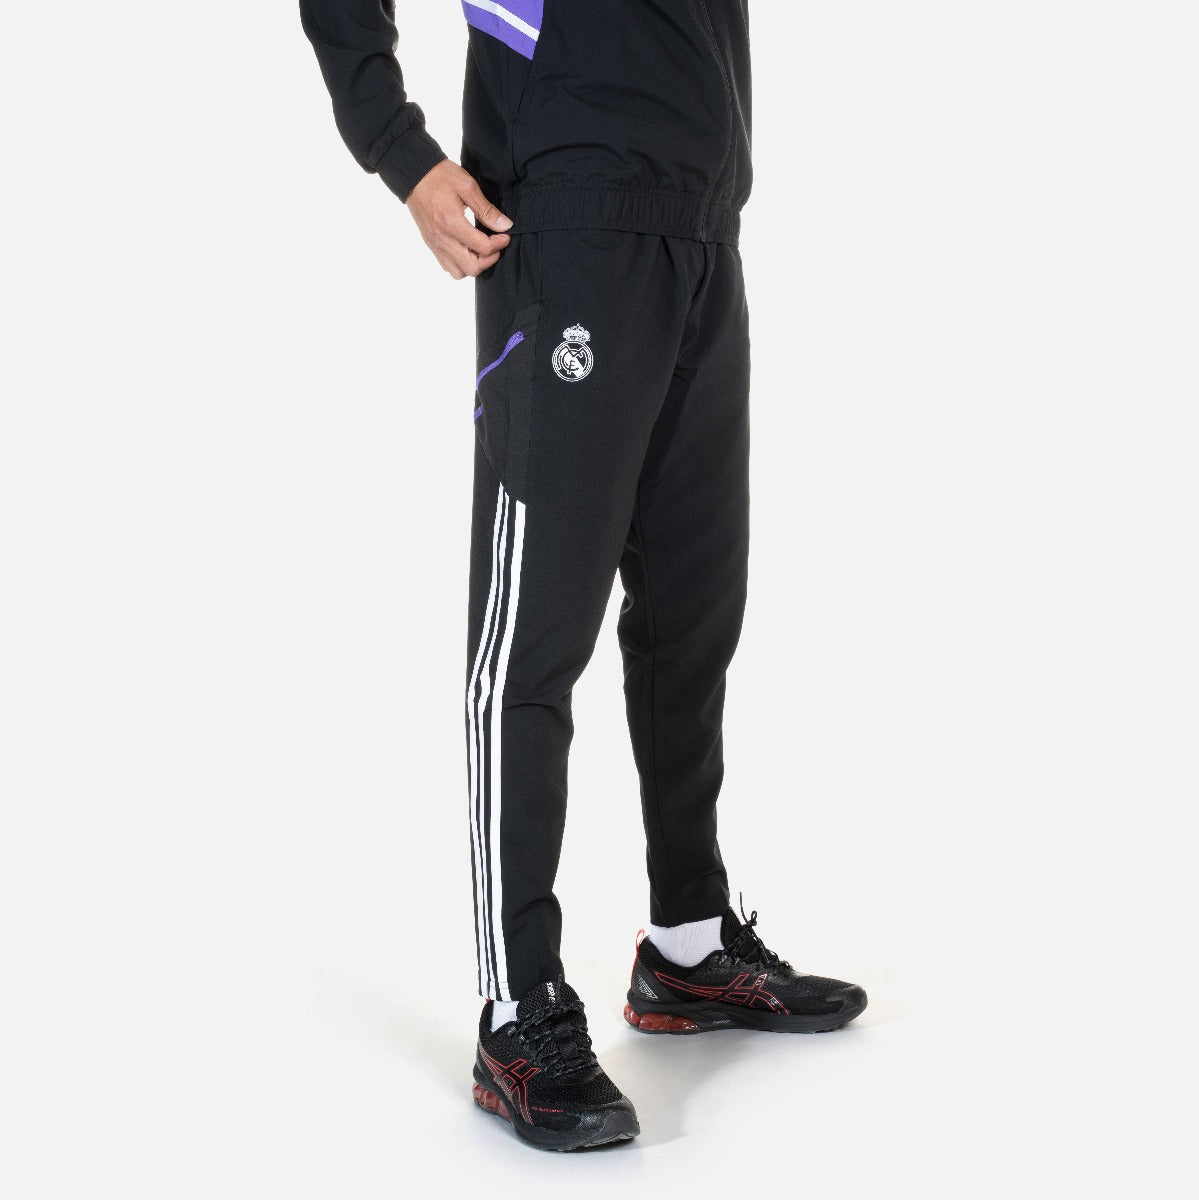 Pantalon de survêtement Real Madrid Condivo 2022/2023 - Noir/Blanc/Violet